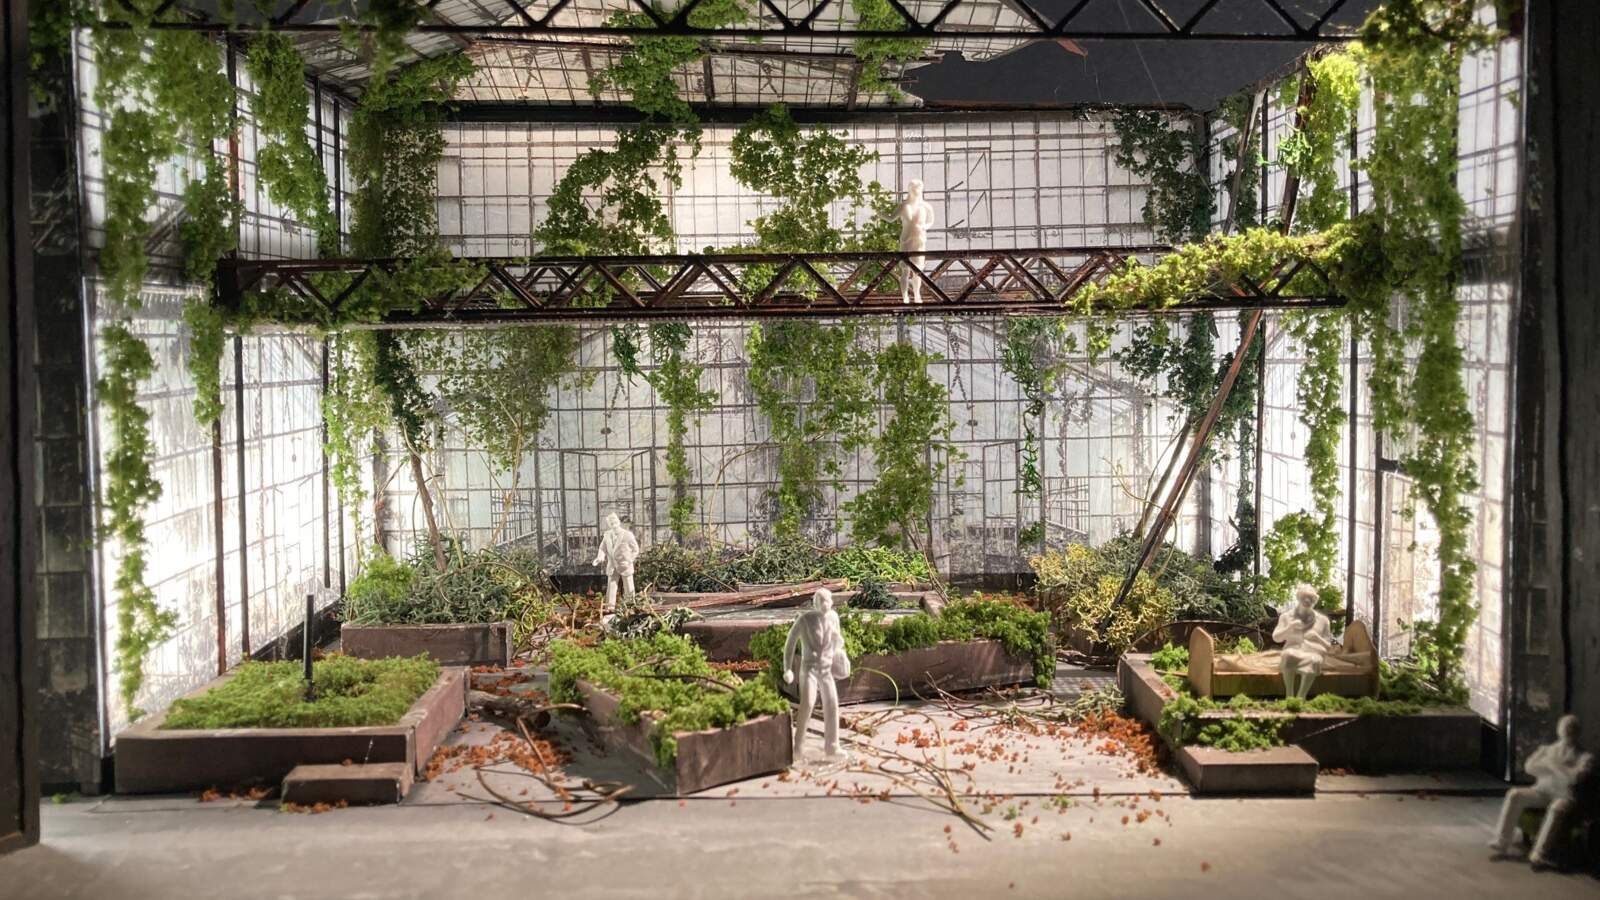 En scenografi modell som visar ett stort växthus. Växthuset är rostigt, igenvuxet och övergivet. Ljus strömmar genom glaset.